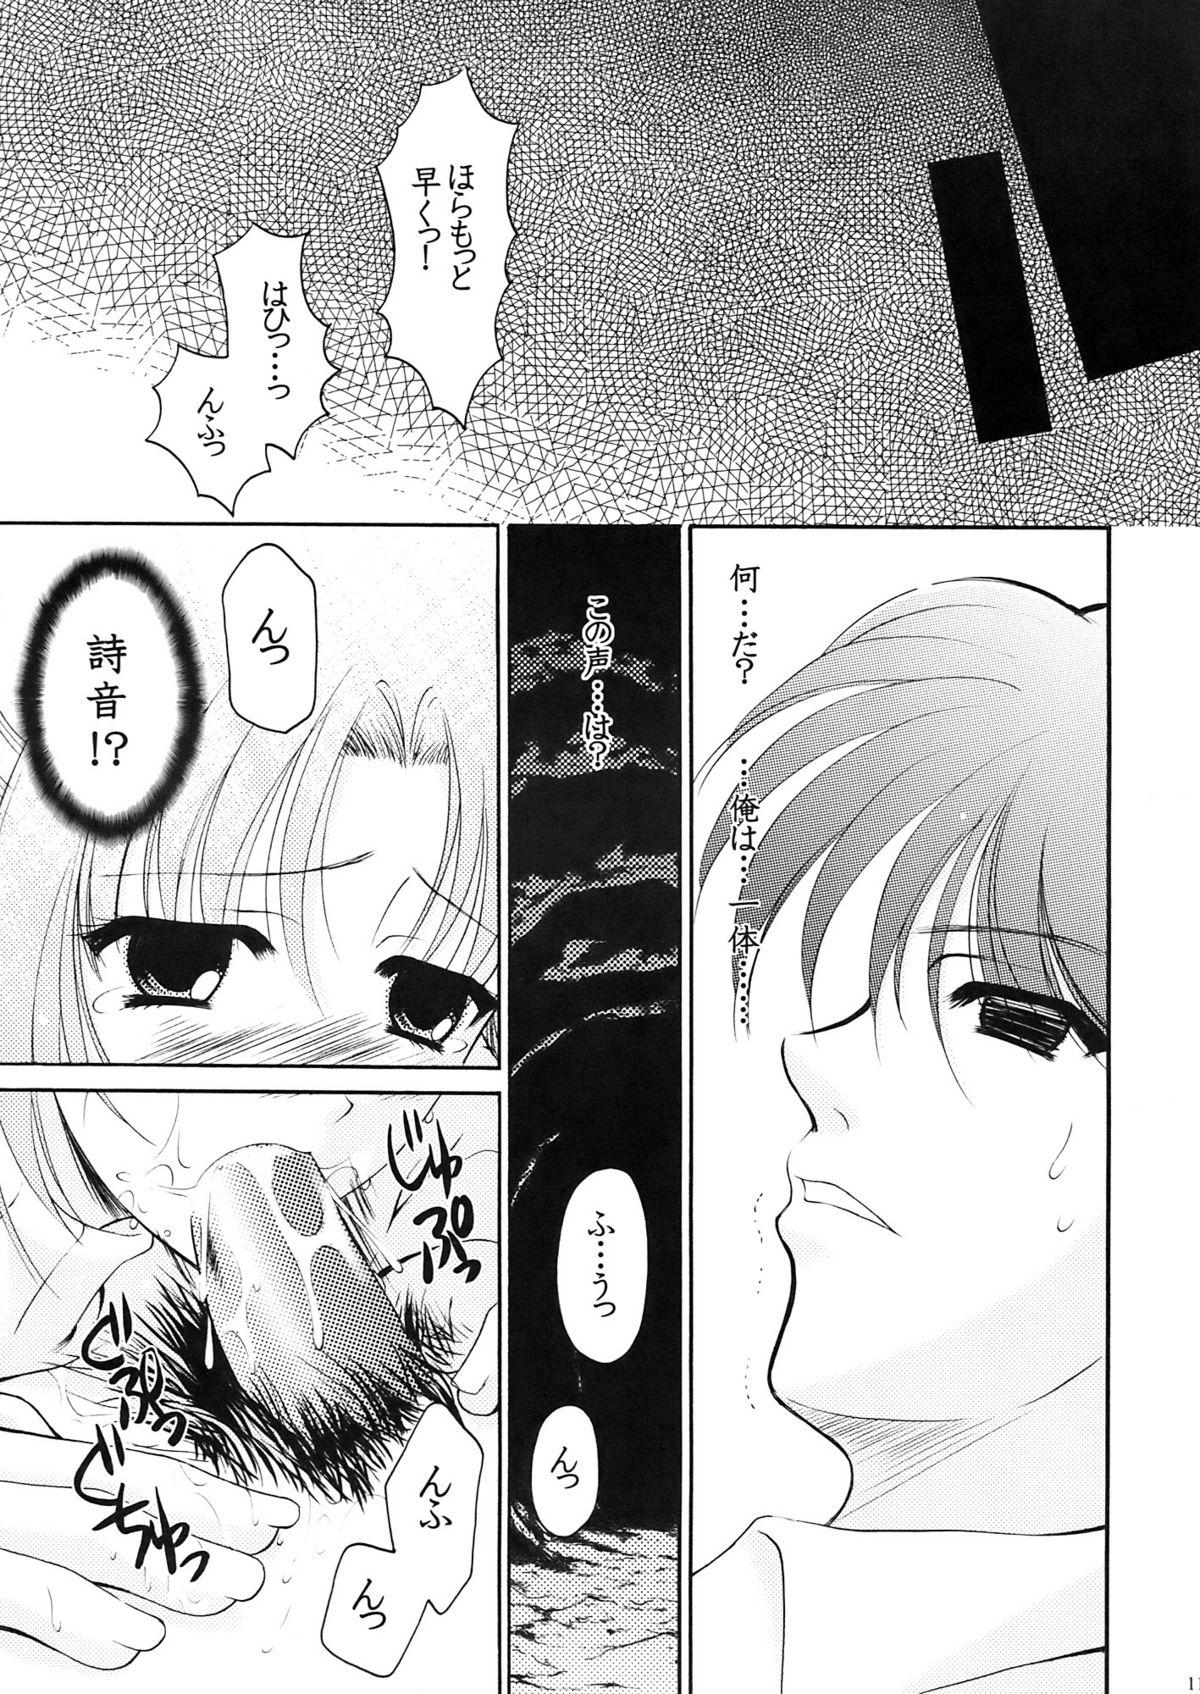 Puta Higupan 3 - Higurashi no naku koro ni Corno - Page 10